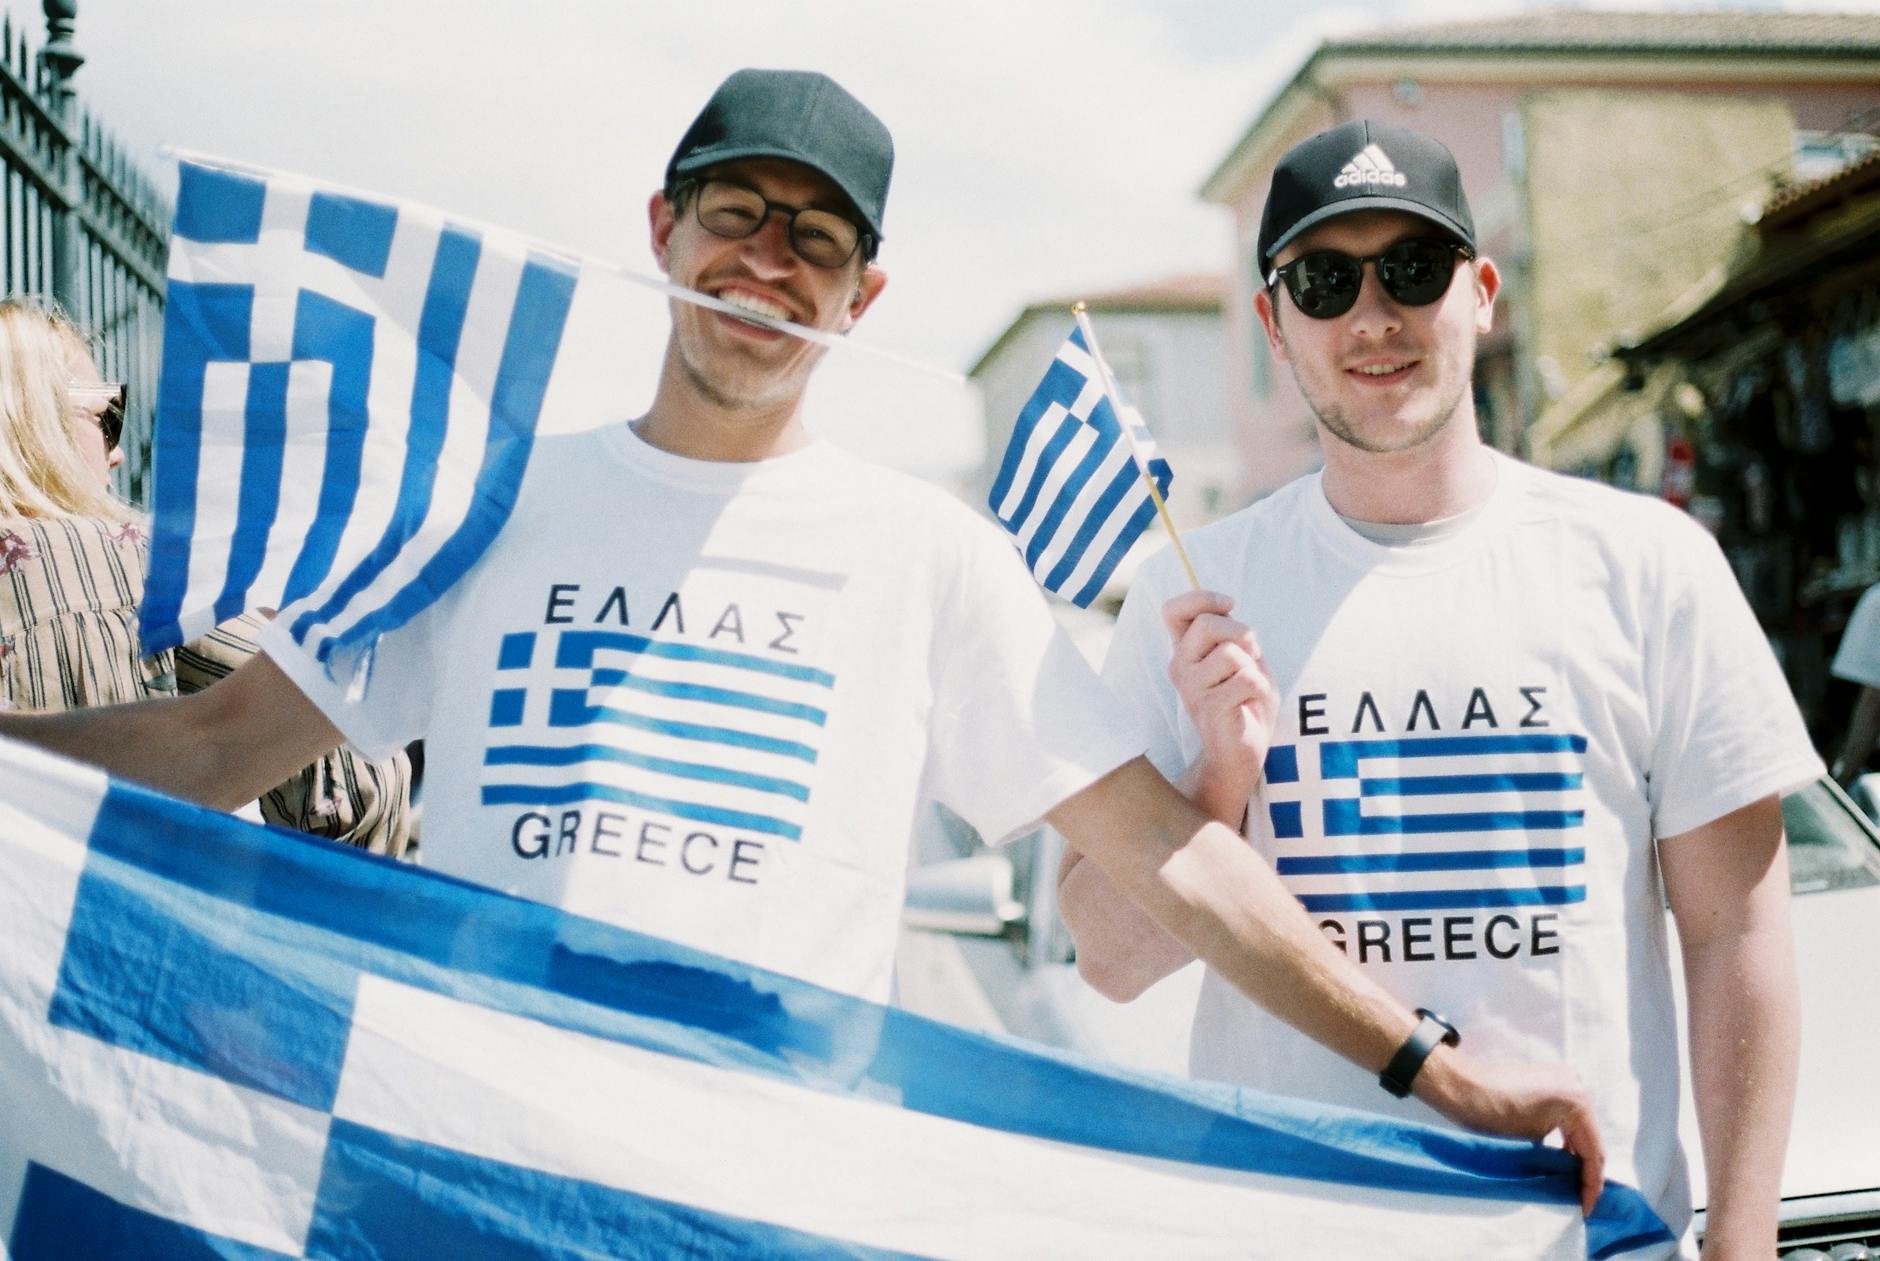 lelaki memakai t shirt dan memegang bendera greece